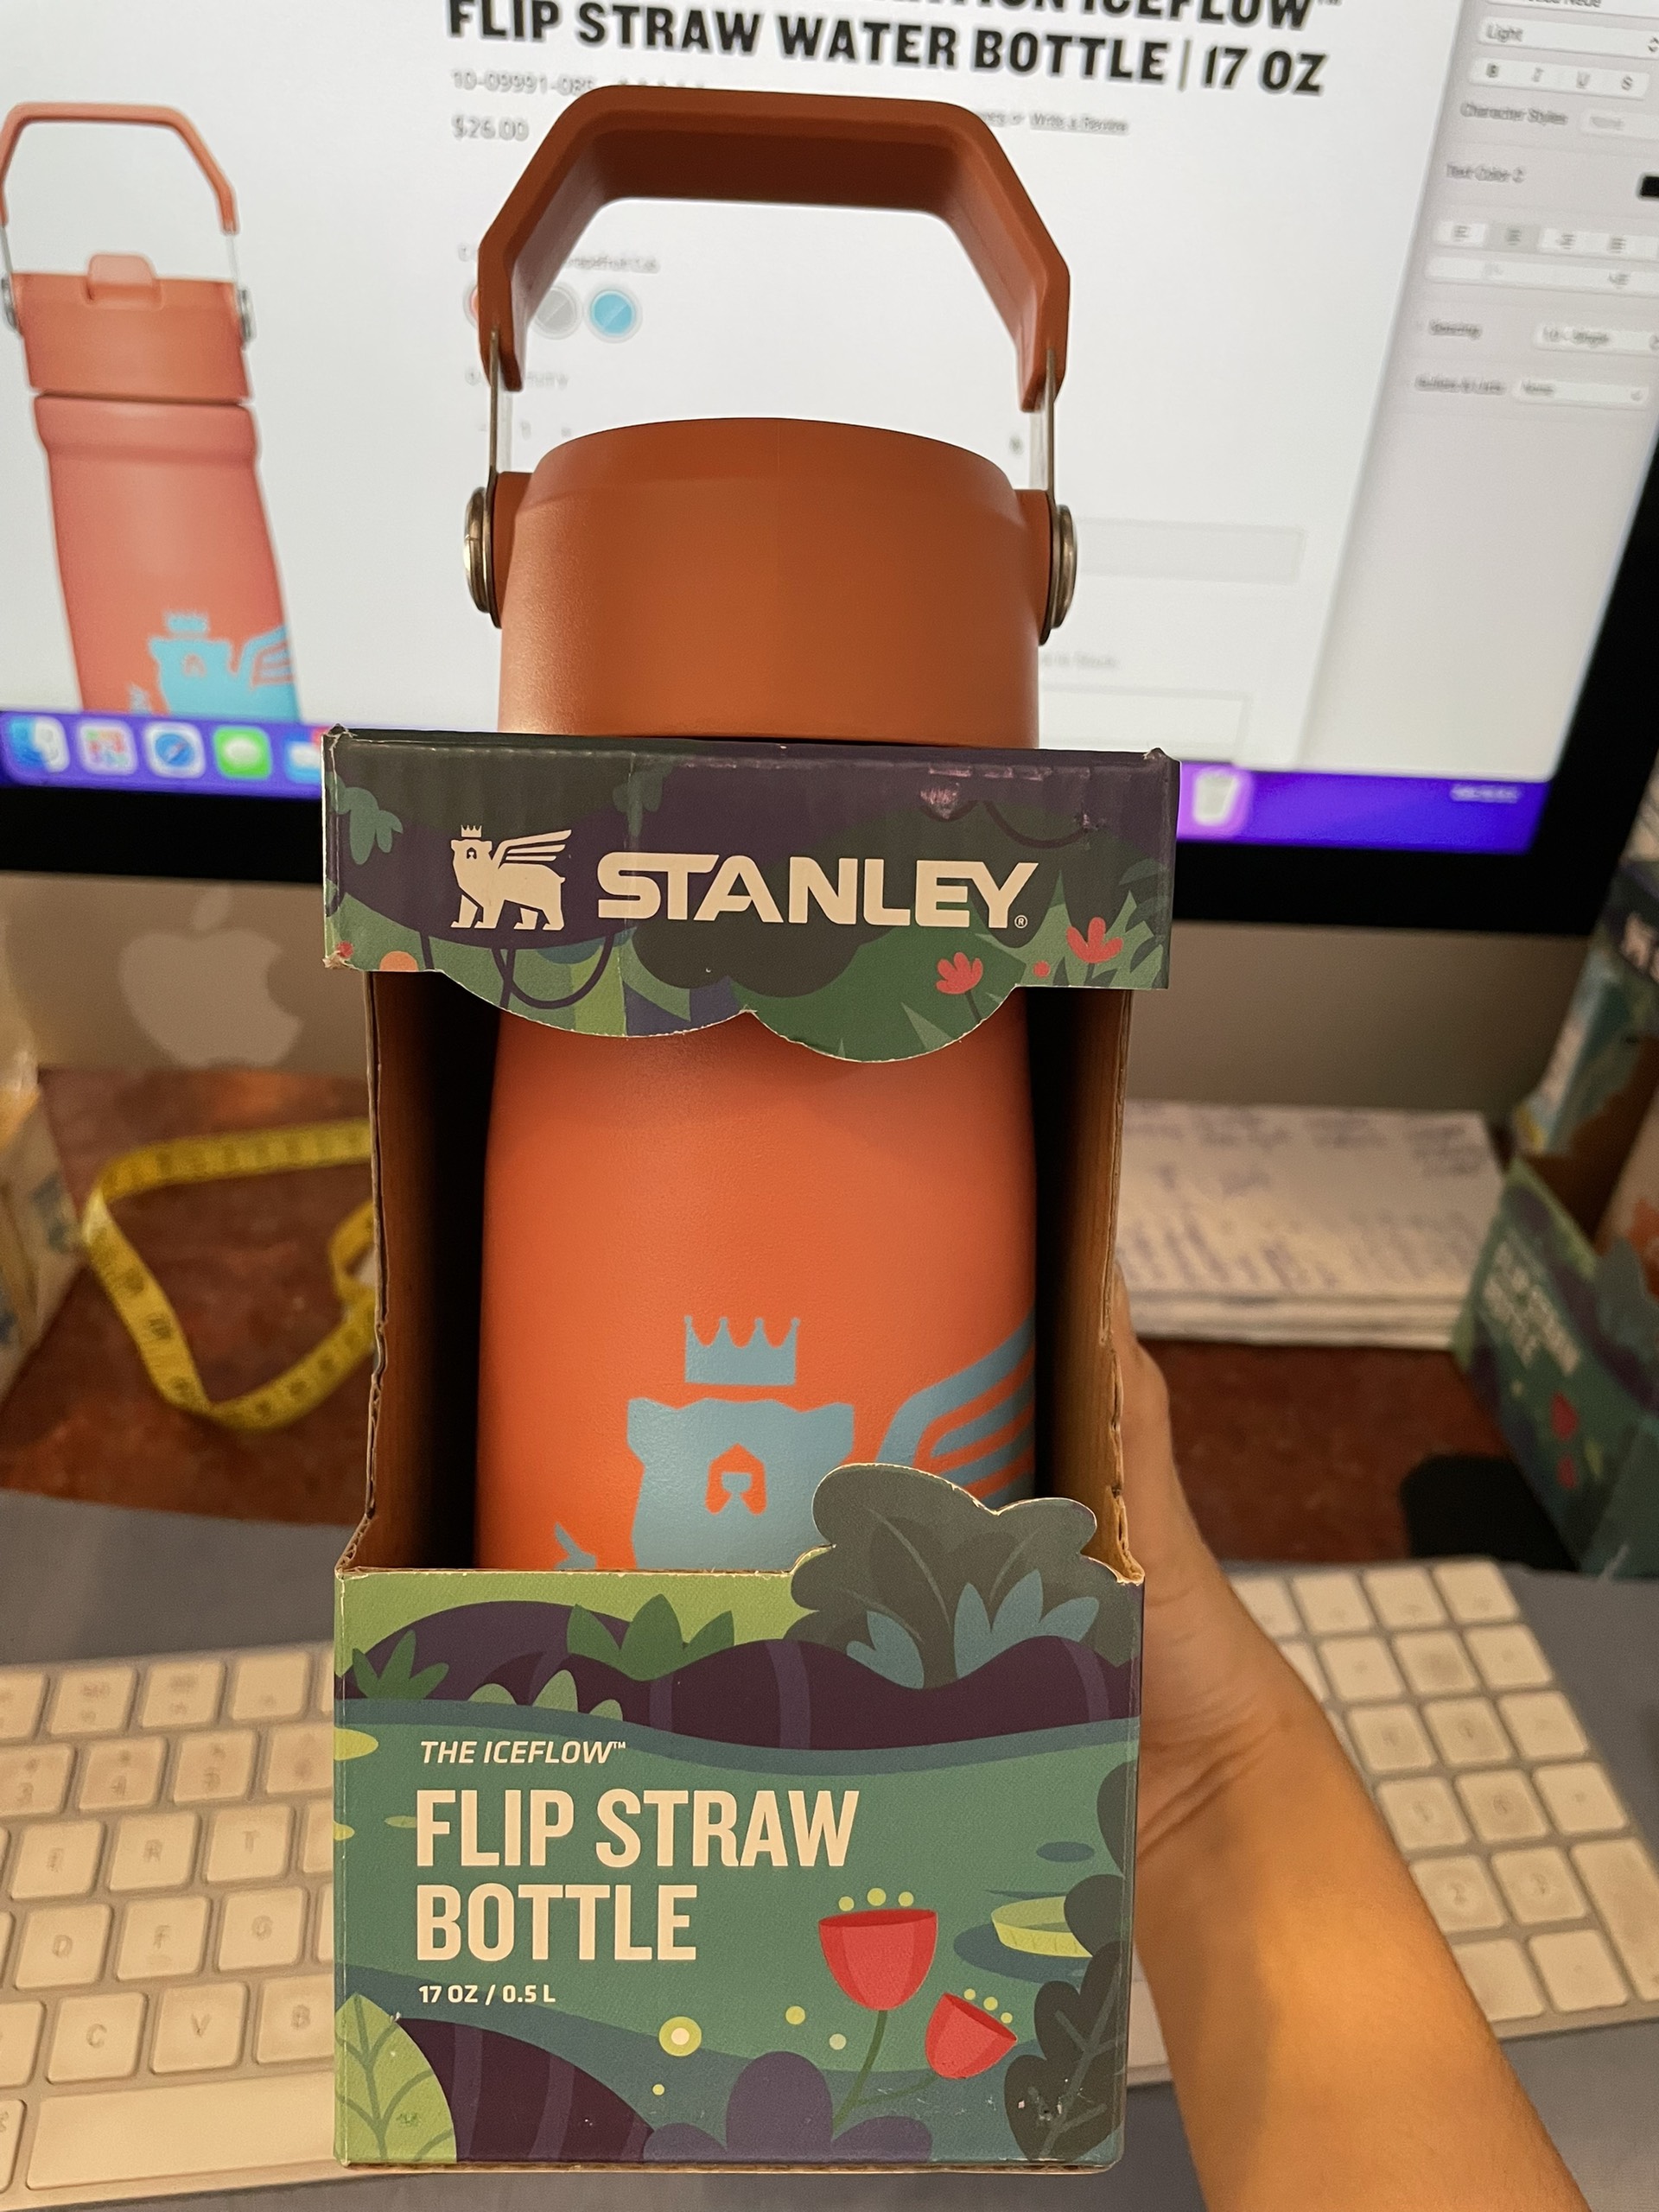 Stanley The Wild Imagination IceFlow Flip Straw Water Bottle 17 oz